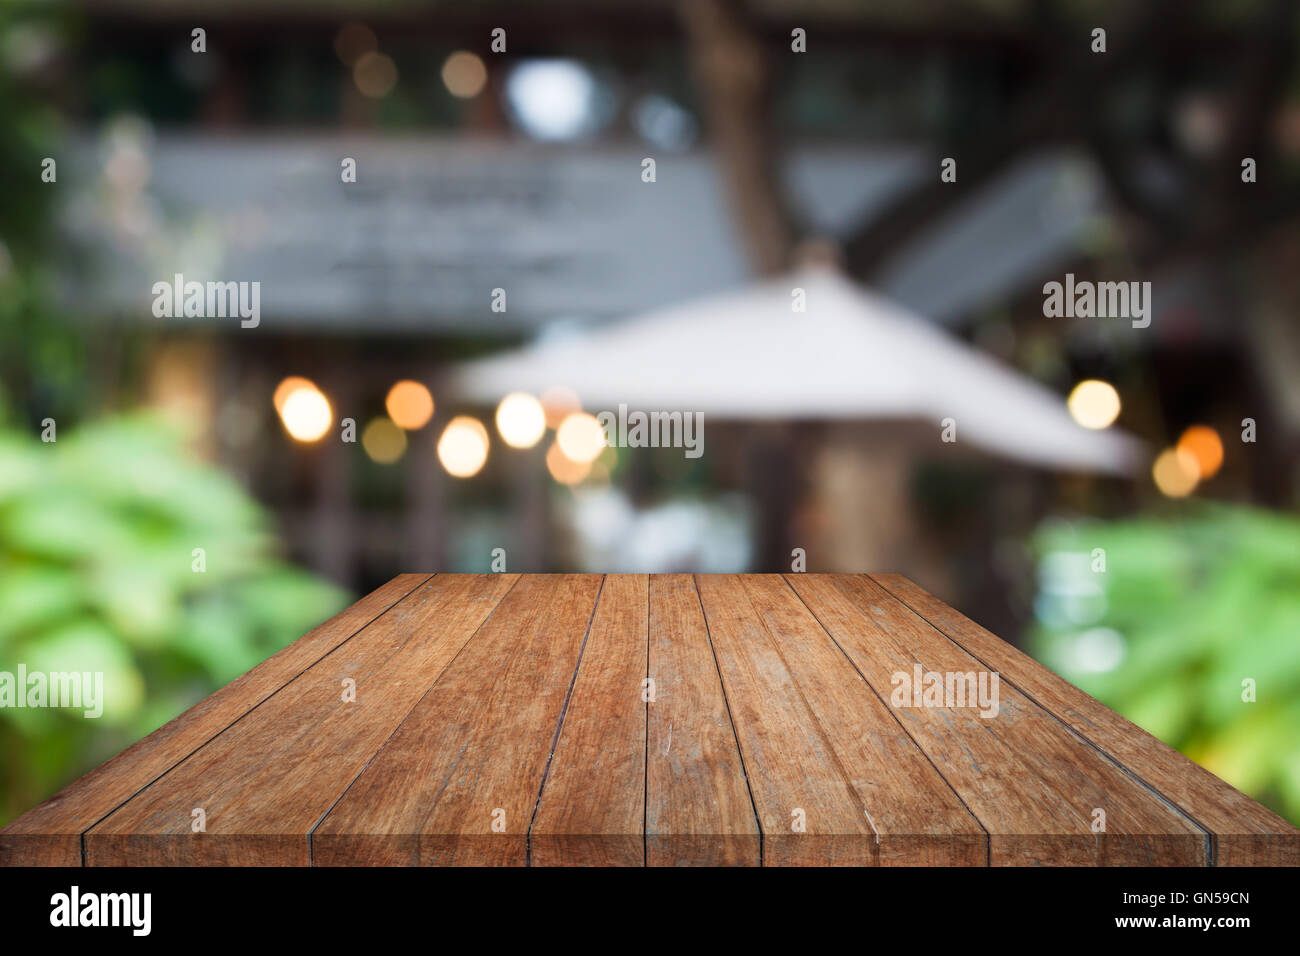 Table en bois avec dessus Vue brouillée cafe abstract background Banque D'Images